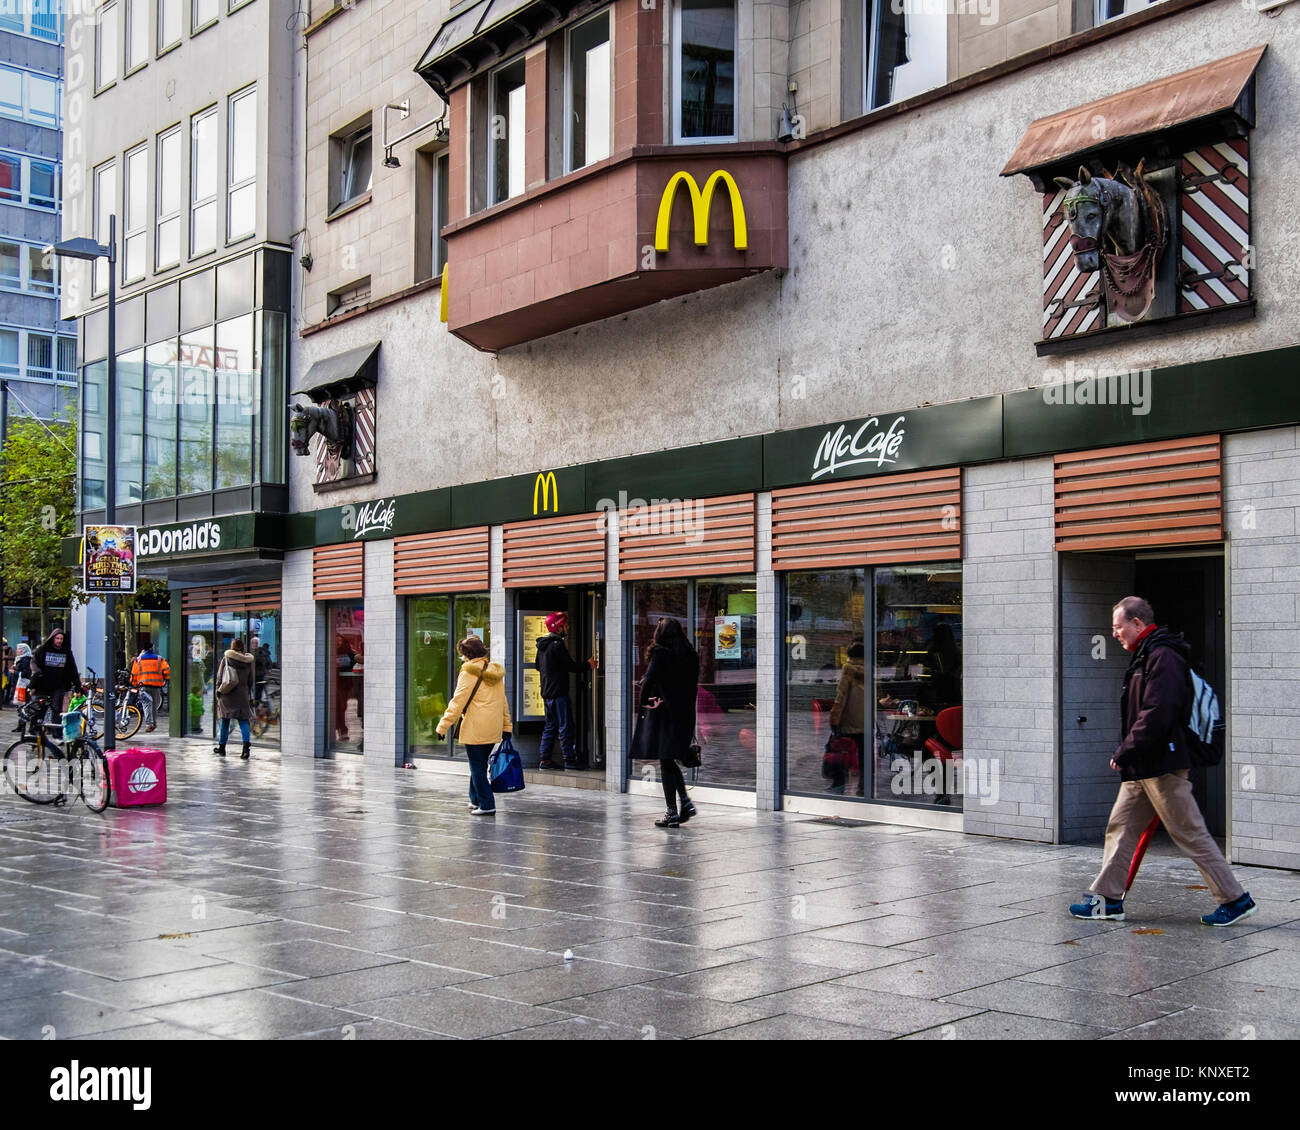 Ristorante McDonald's e McCafe, fast food in franchising nella ex fabbrica di birra Henninger edificio. Francoforte, Germania Foto Stock